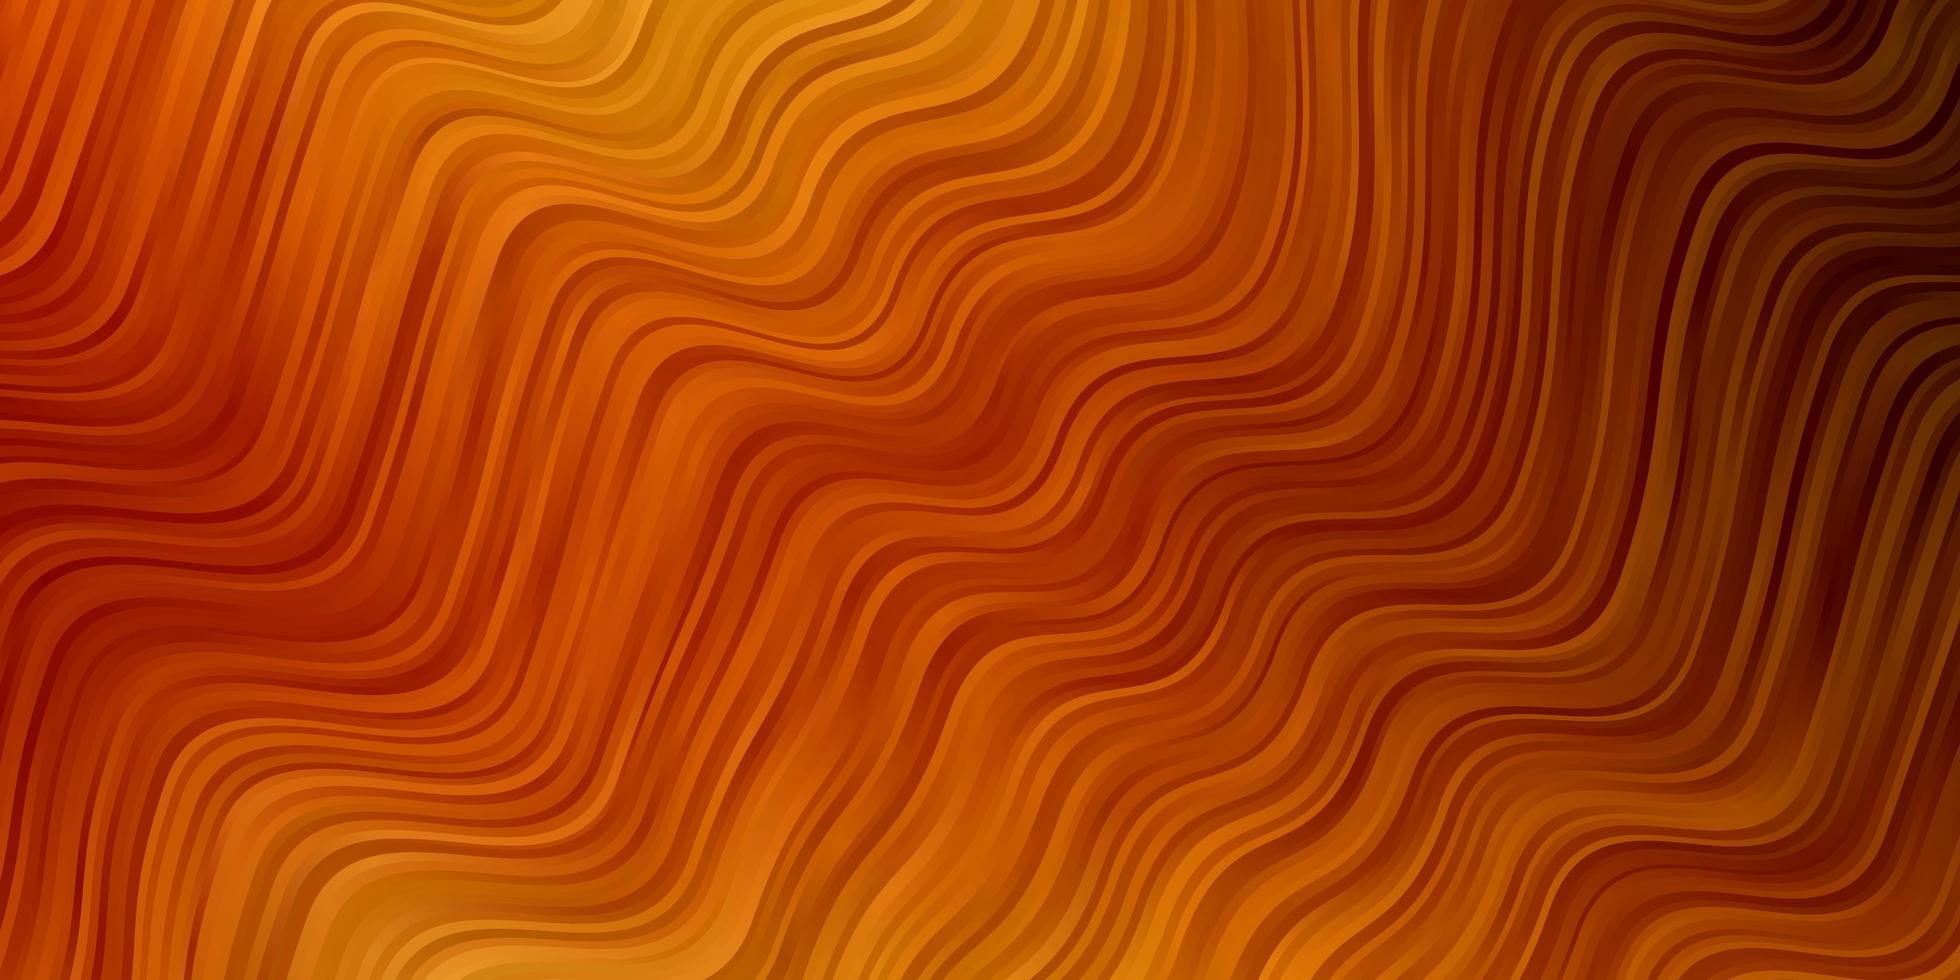 ljus orange vektor bakgrund med bågar.